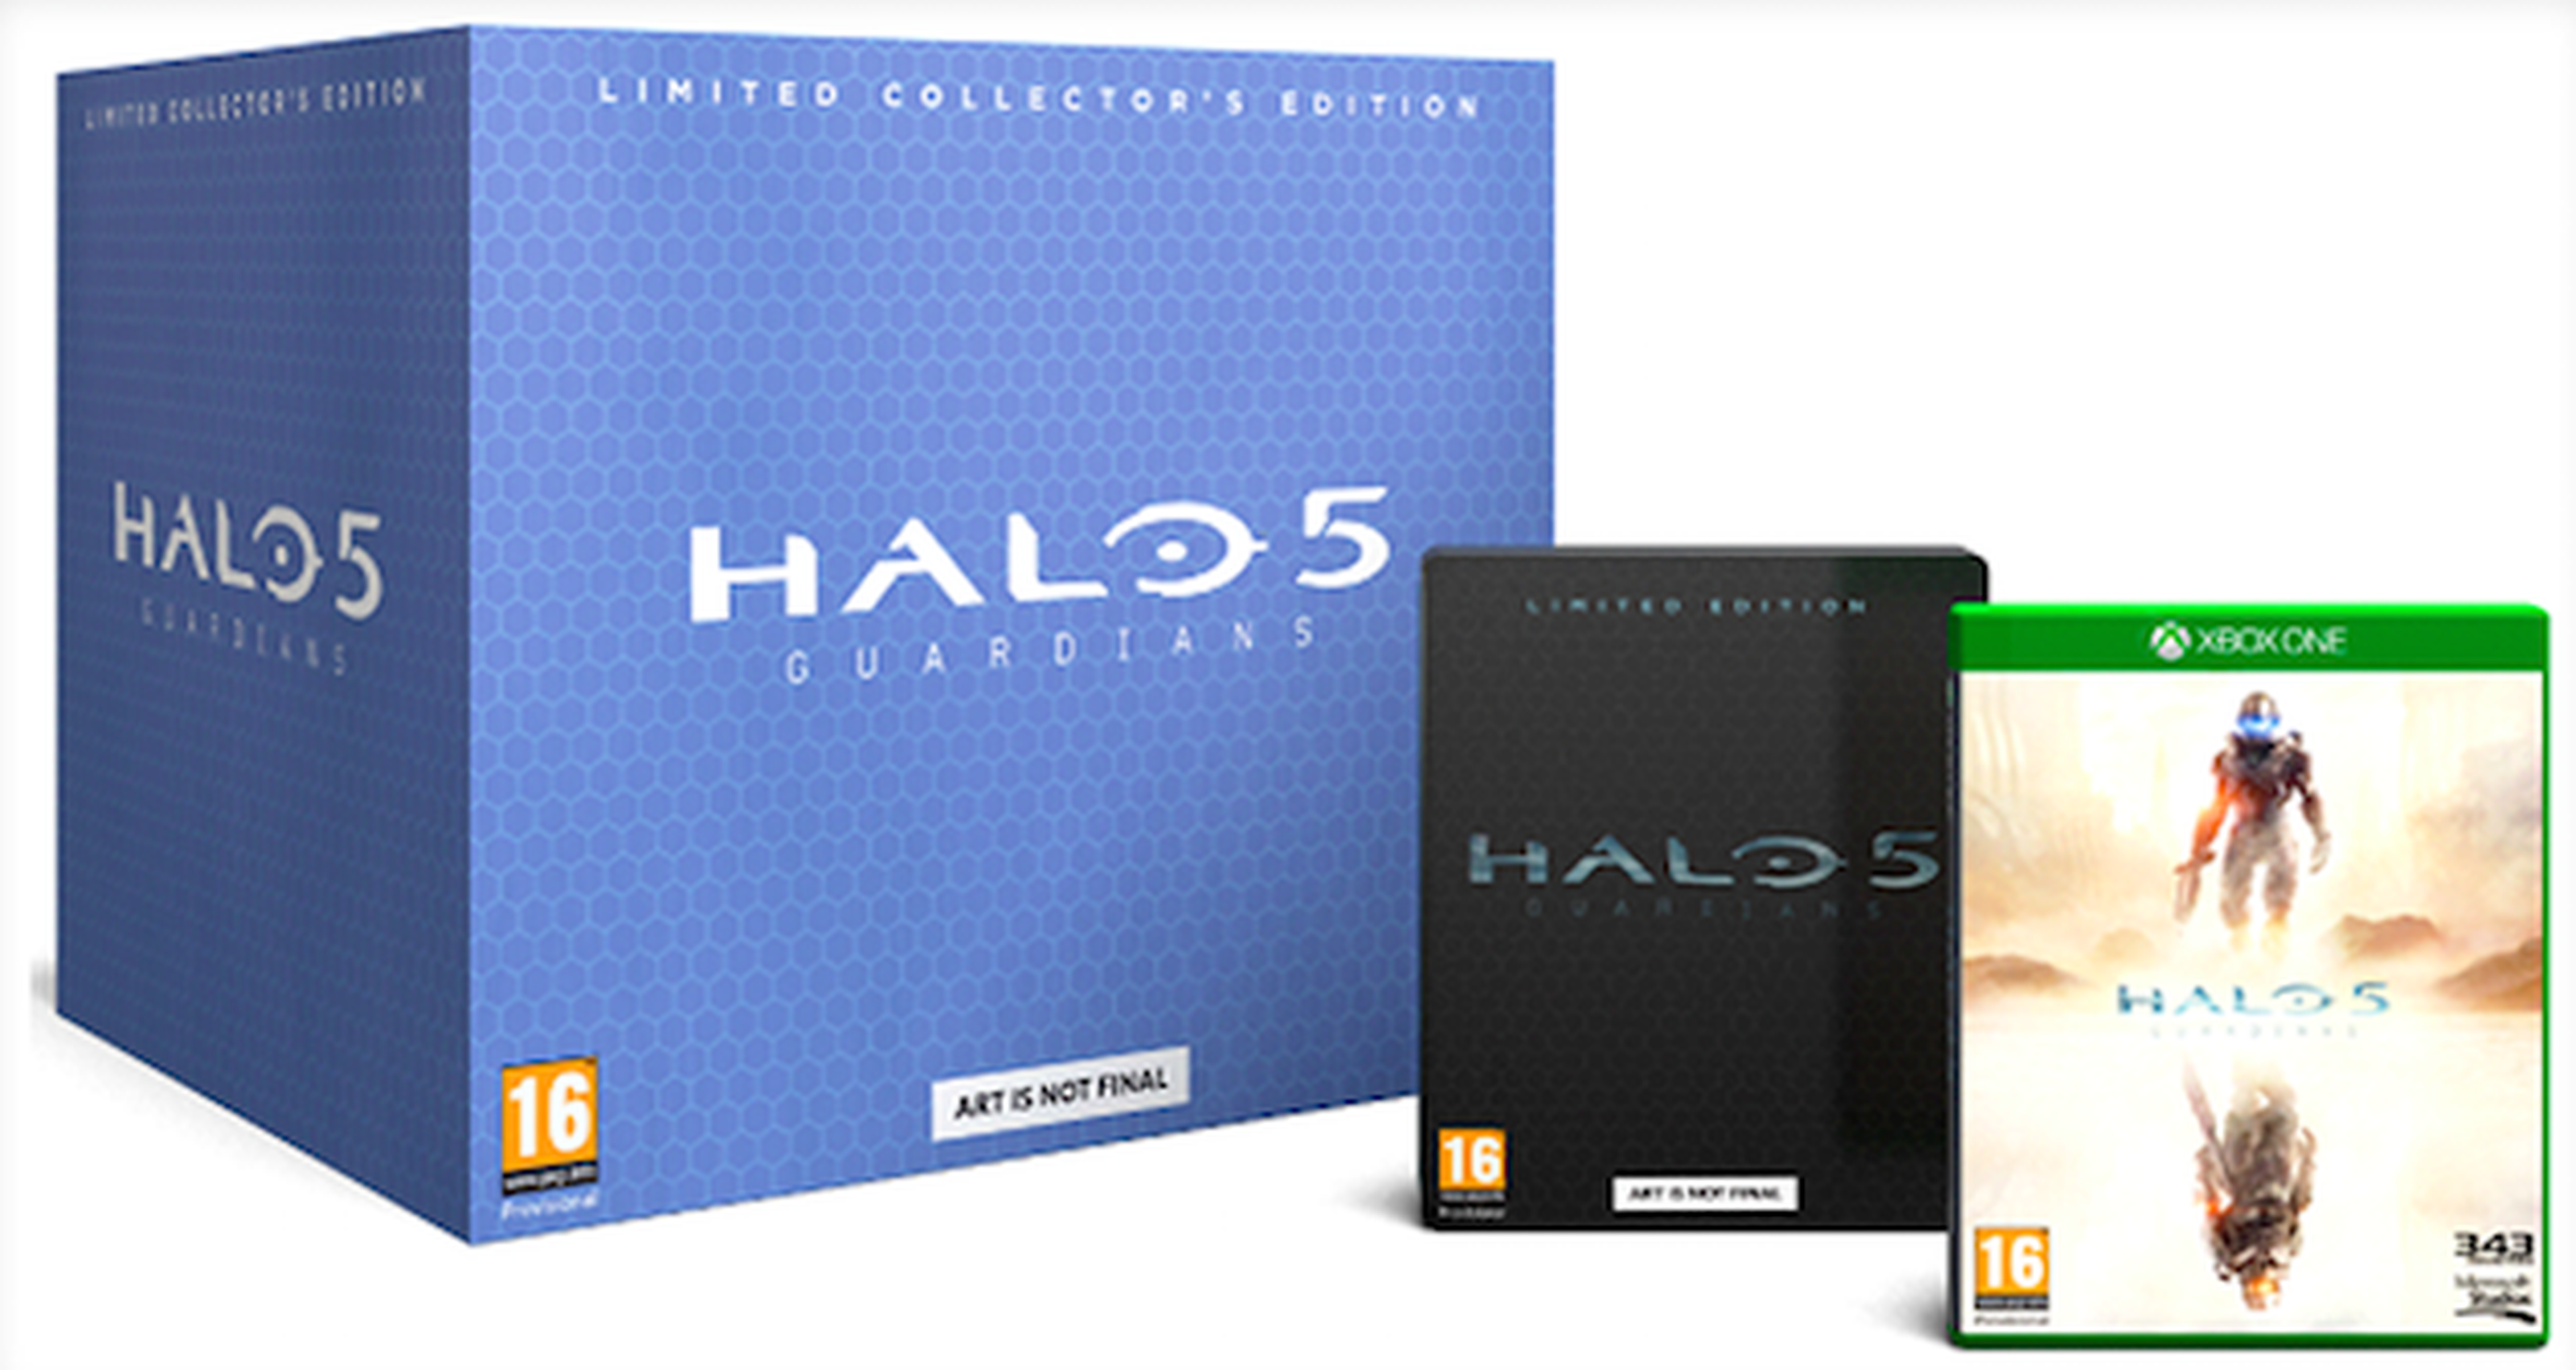 GAME venderá en exclusiva la Edición Coleccionista de Halo 5: Guardians